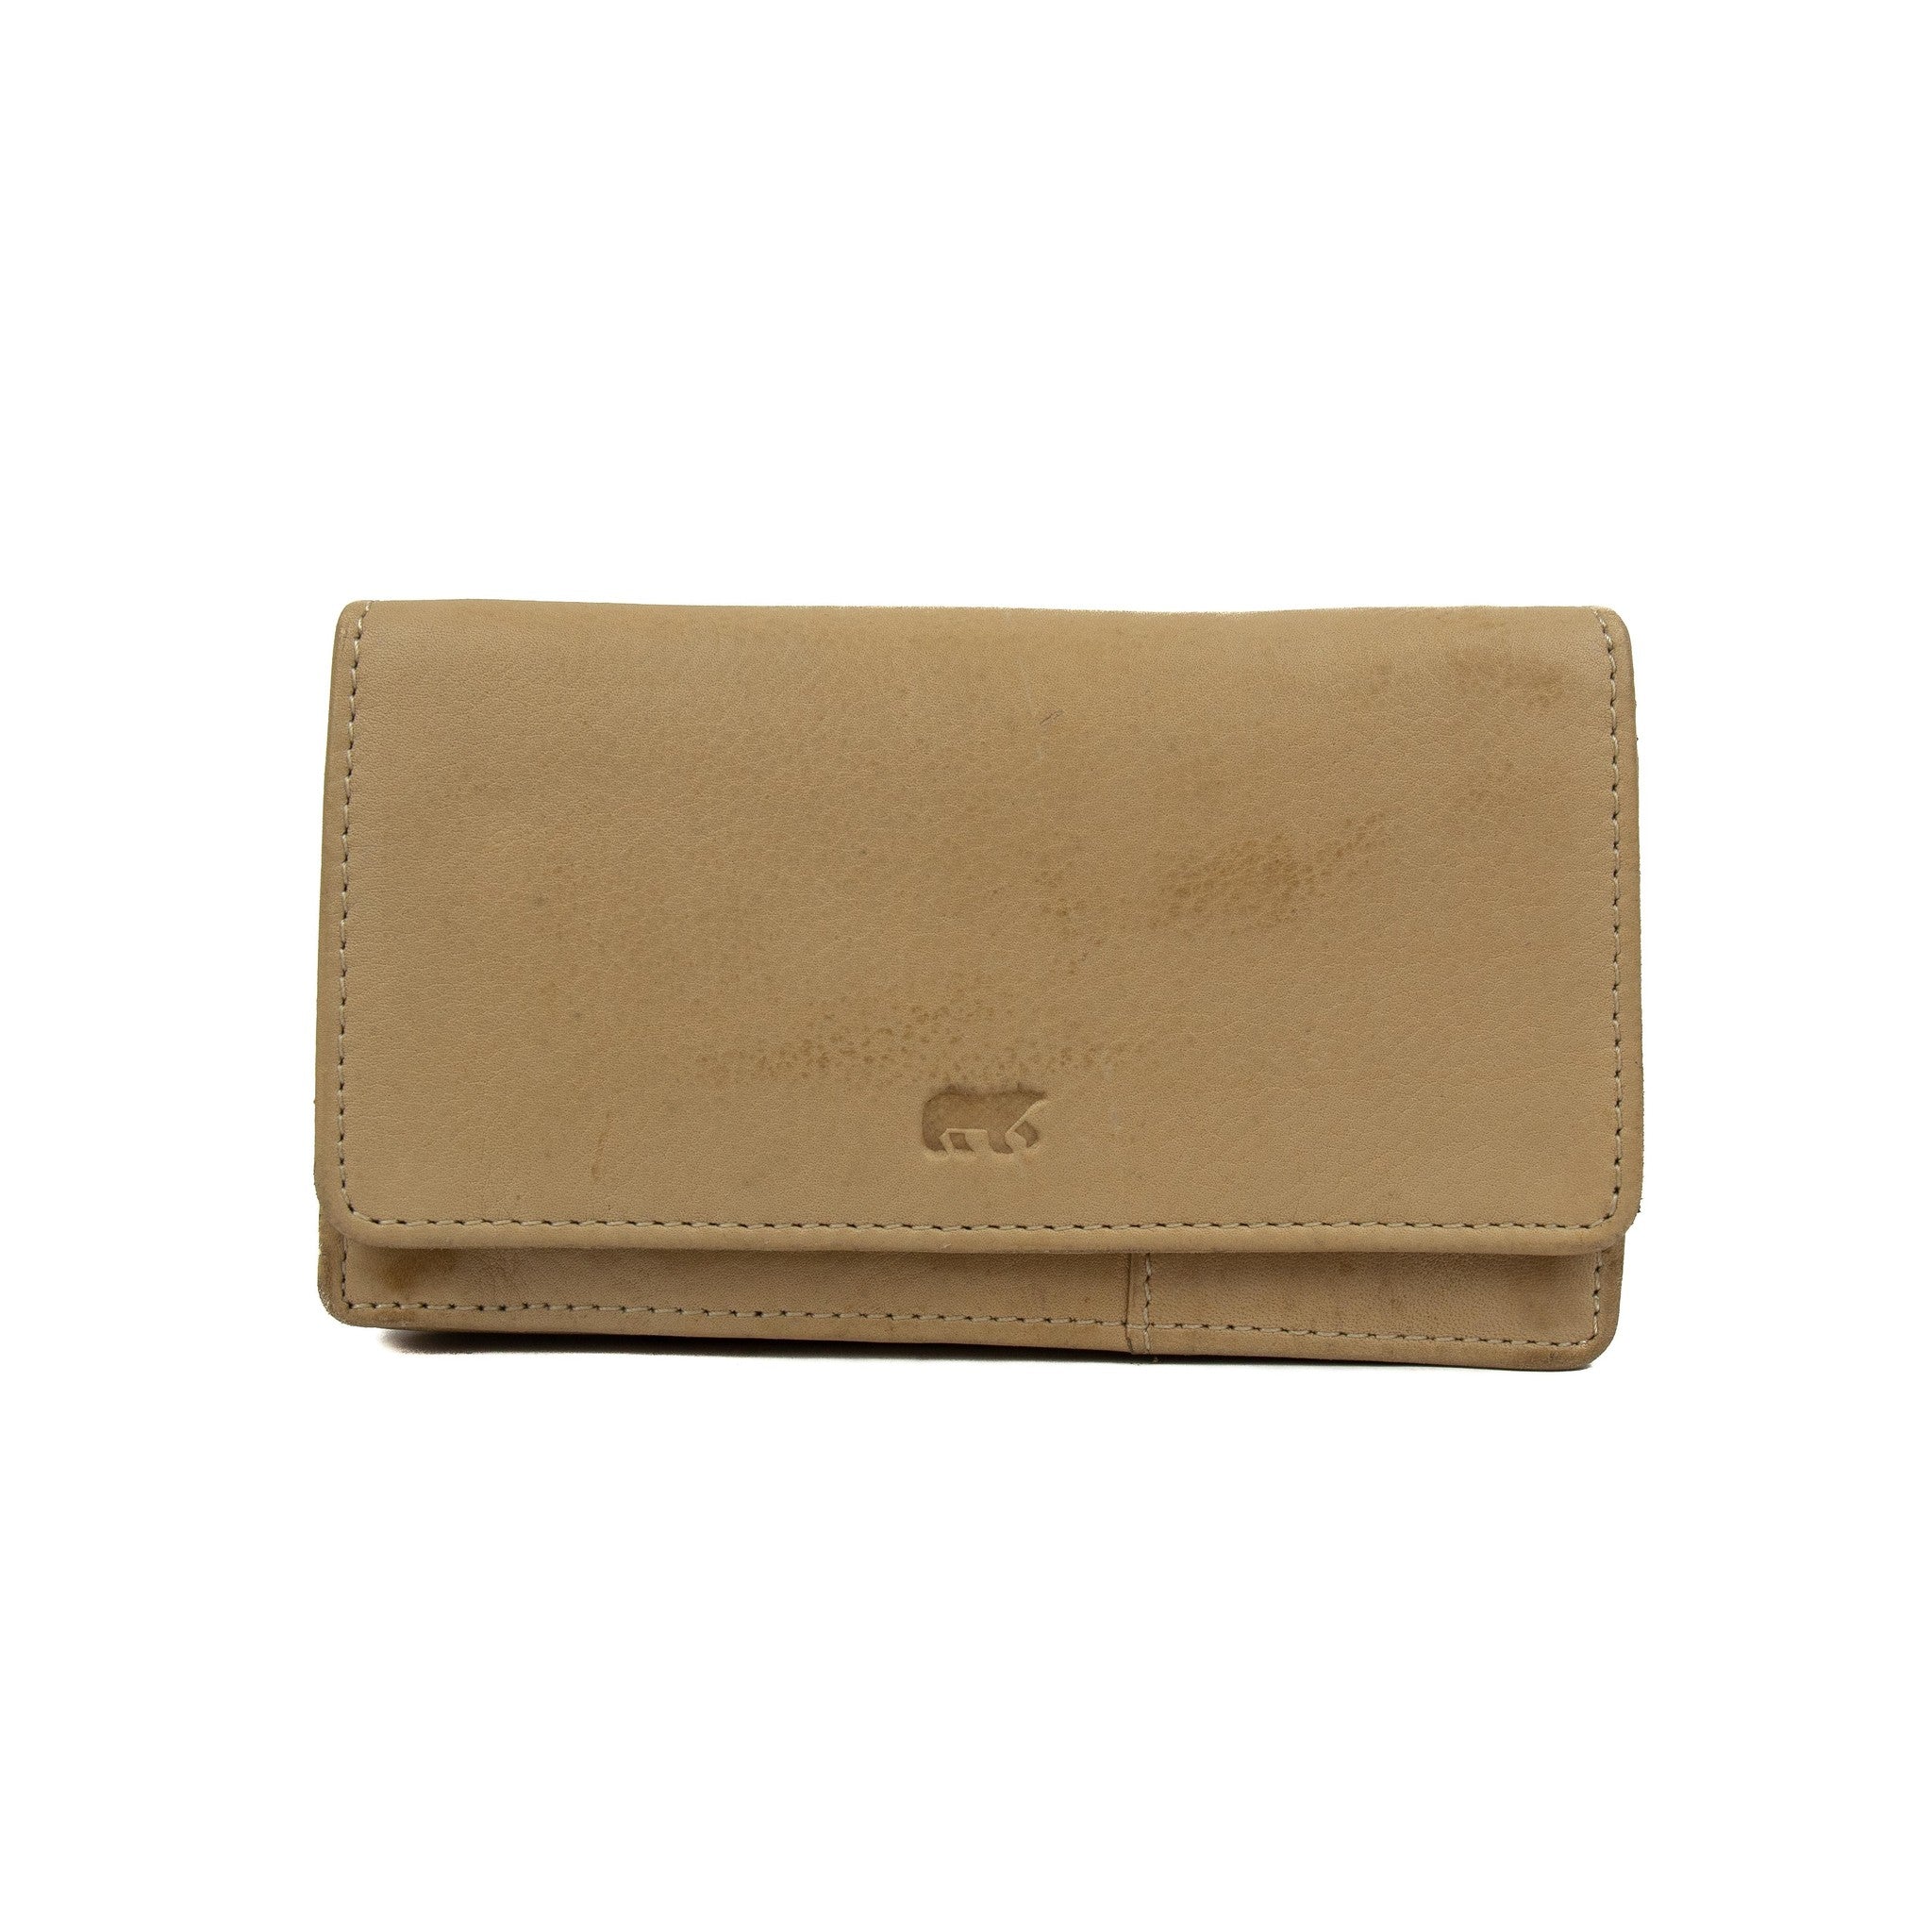 Wrap wallet 'Emma' beige - CL 782